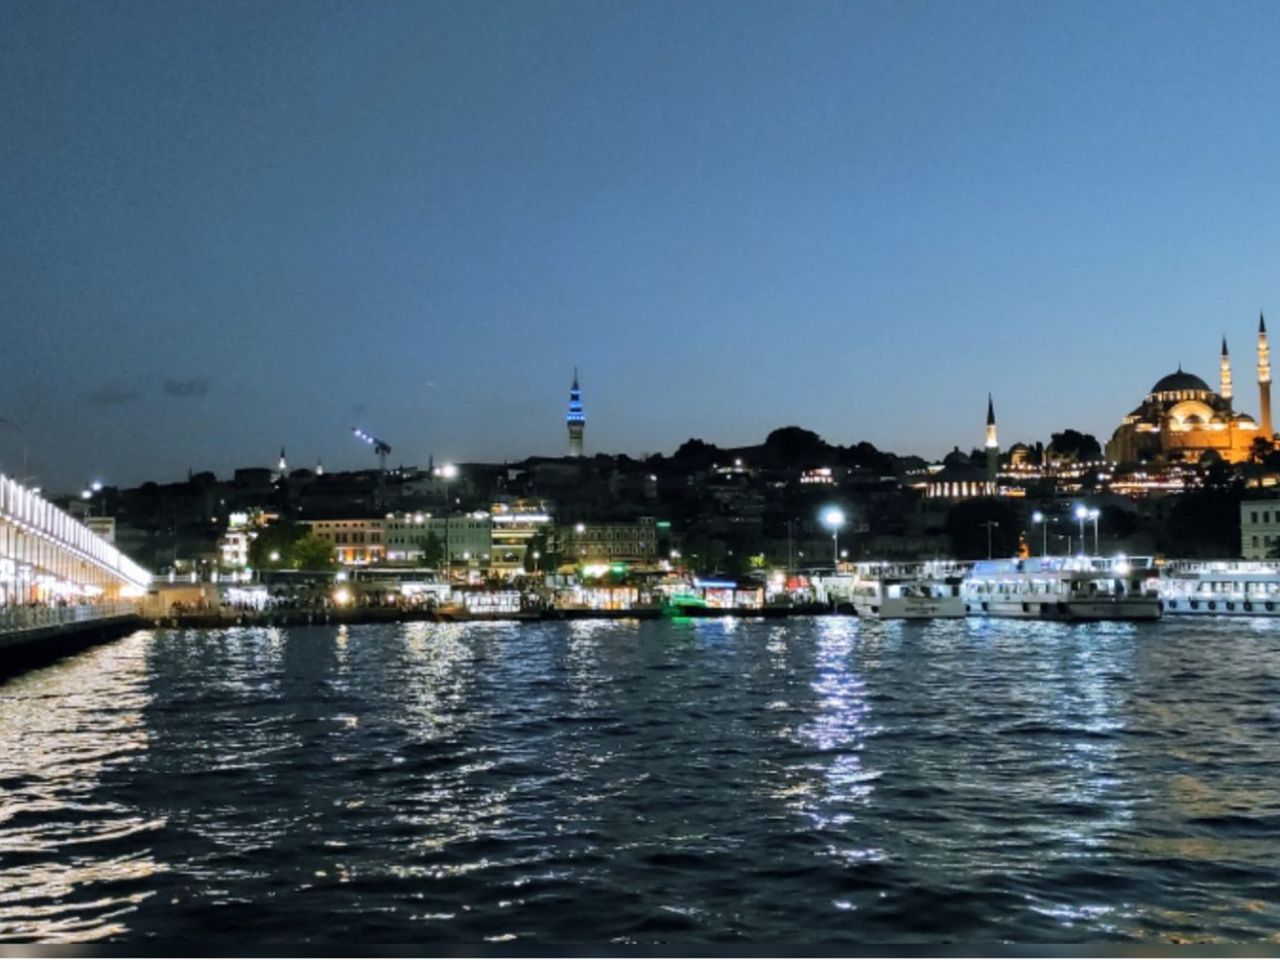 Вечерняя прогулка по любимому Стамбулу | Цена 190€, отзывы, описание экскурсии